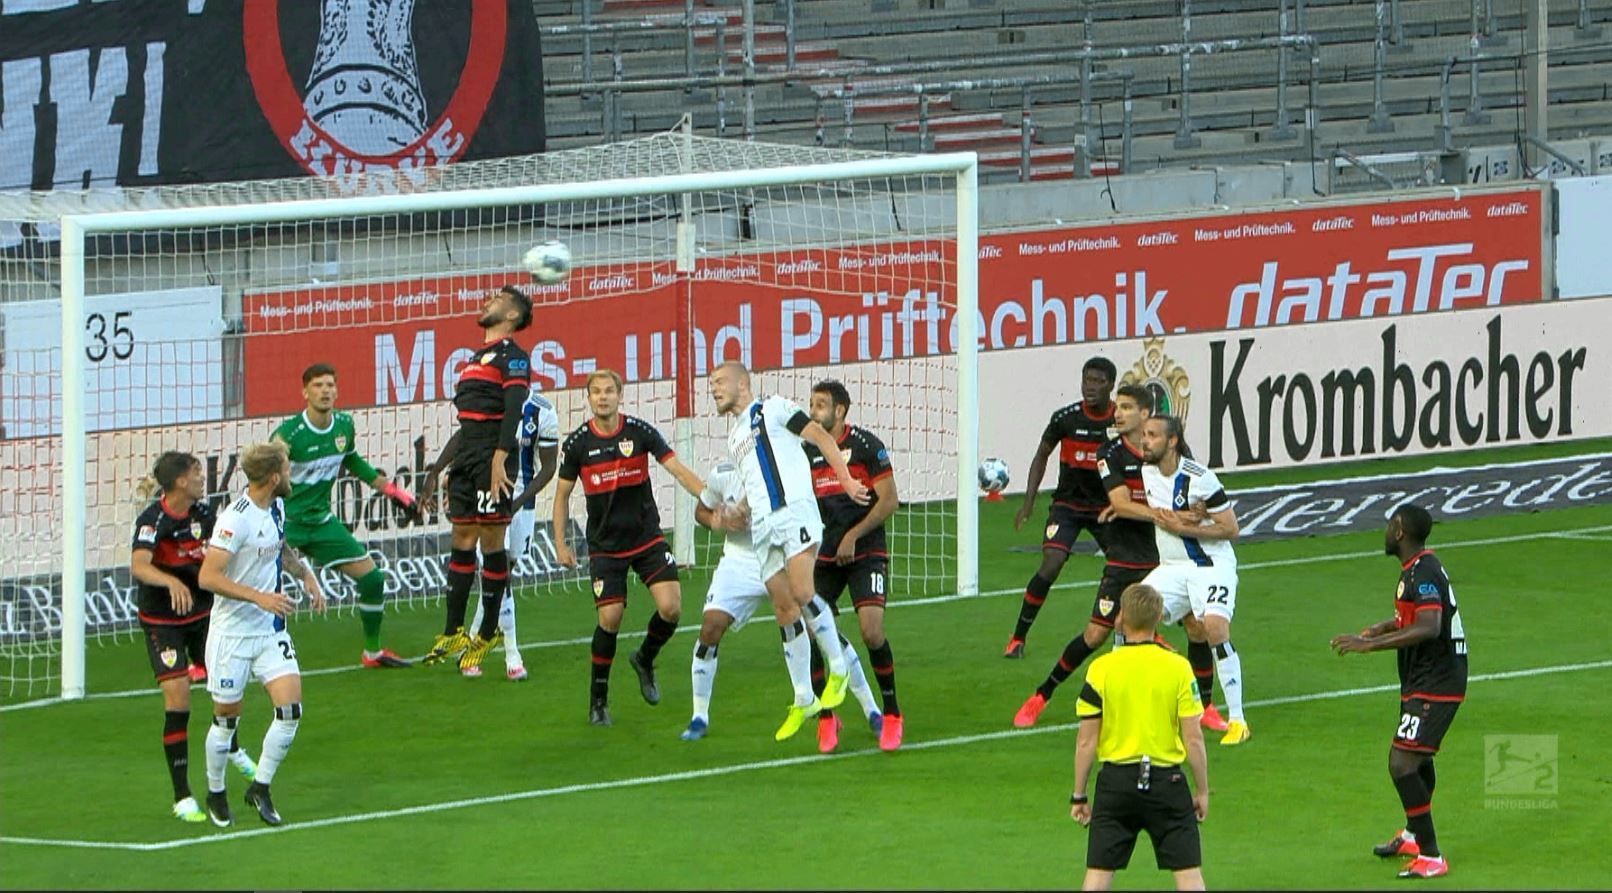 Stuttgart - Hamburger 0-2, ACUM, la Digi Sport 1. Oaspeţii îşi măresc avantajul din penalty, în derby-ul promovării